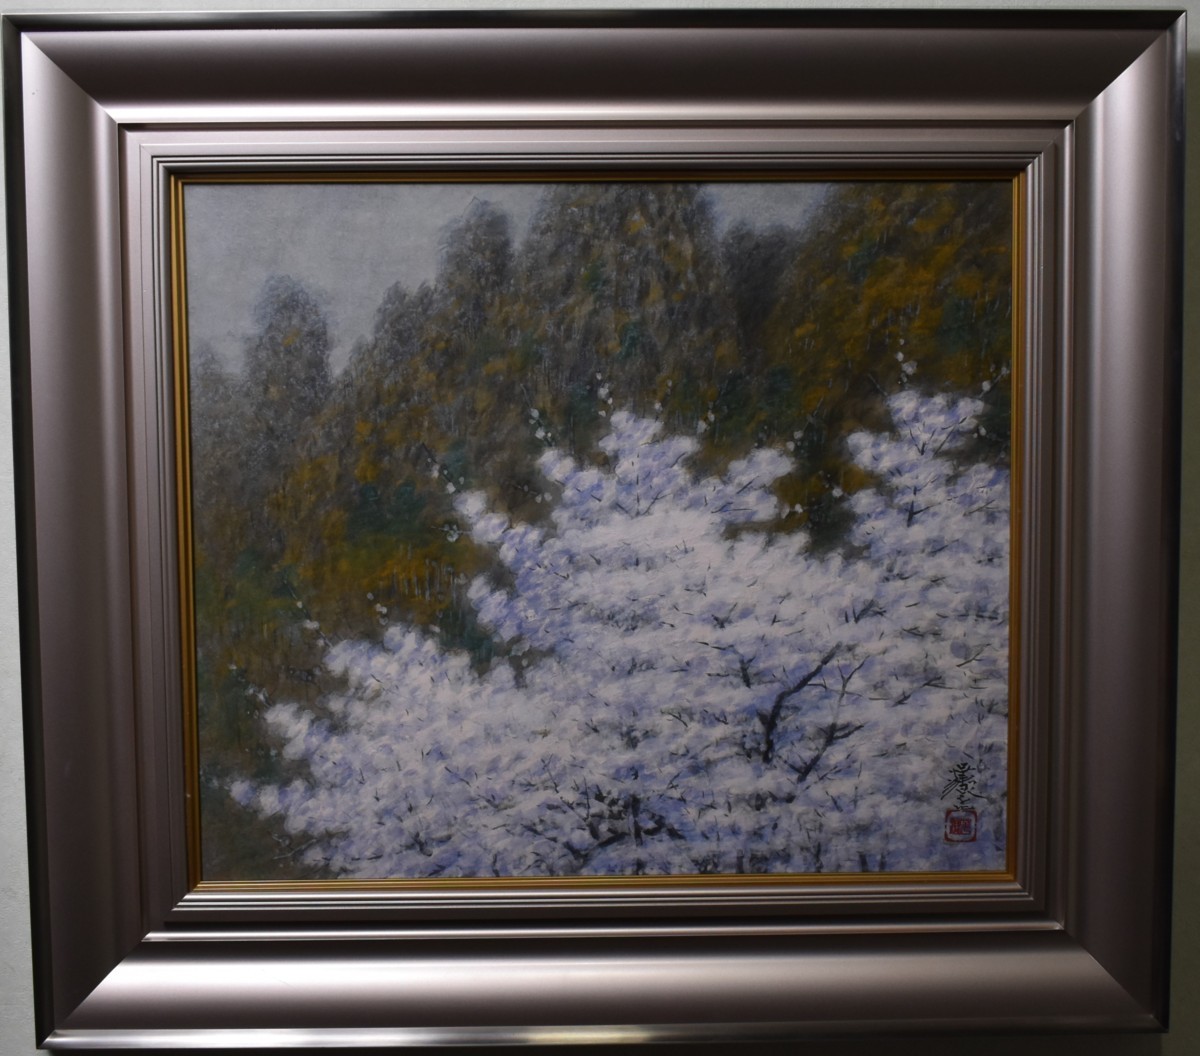 Beliebtes und empfohlenes Werk! Japanisches Gemälde von Anzai Kakyo, Nr. 10 Myogi Frühlingsszene, Malerei, Japanische Malerei, Landschaft, Wind und Mond